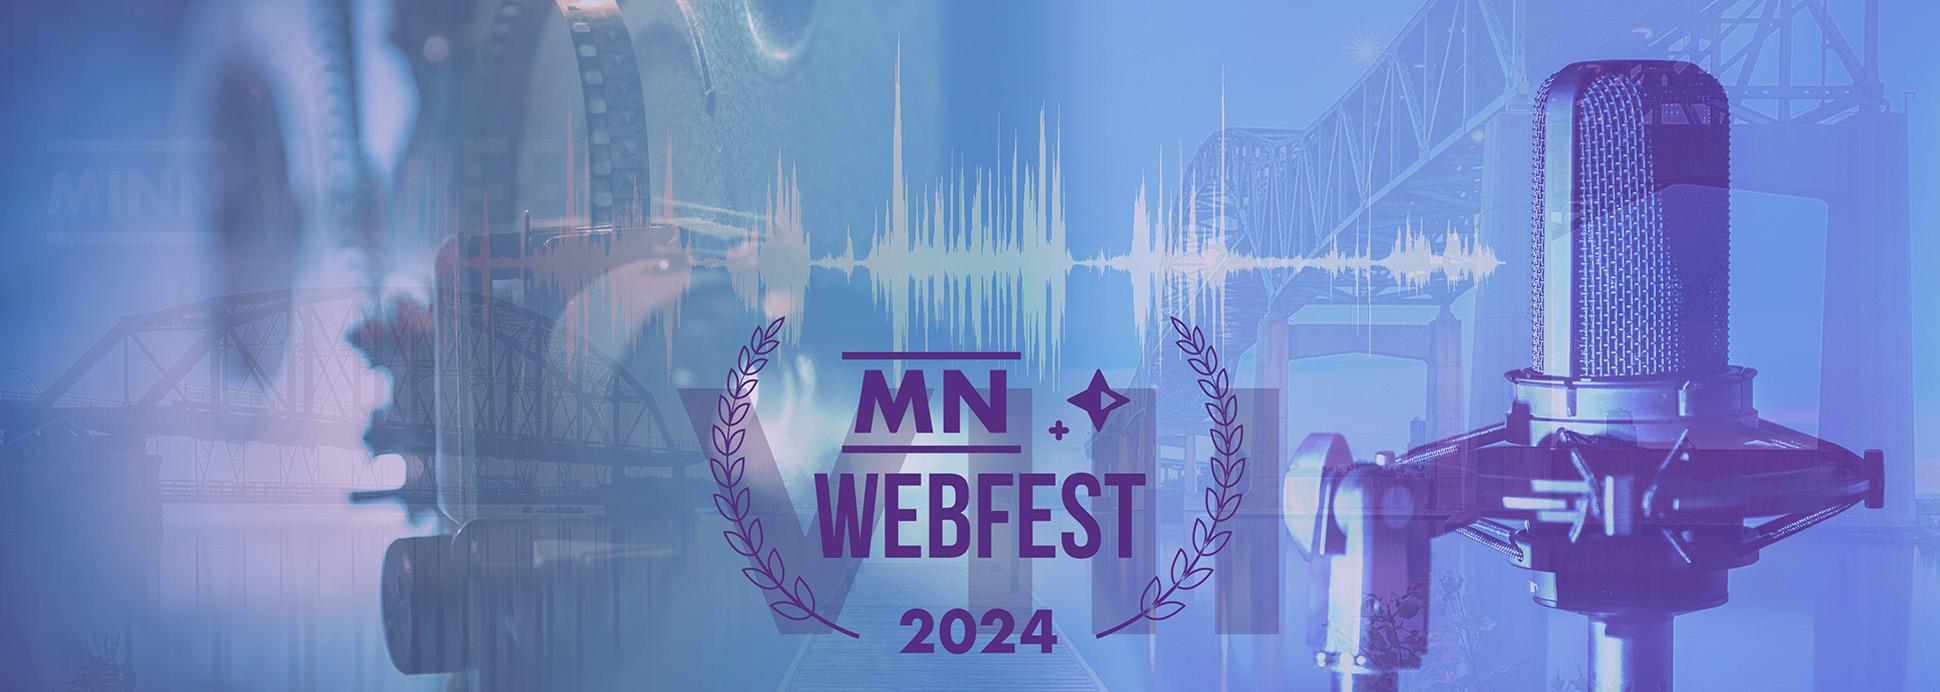 MN WebFest 2024